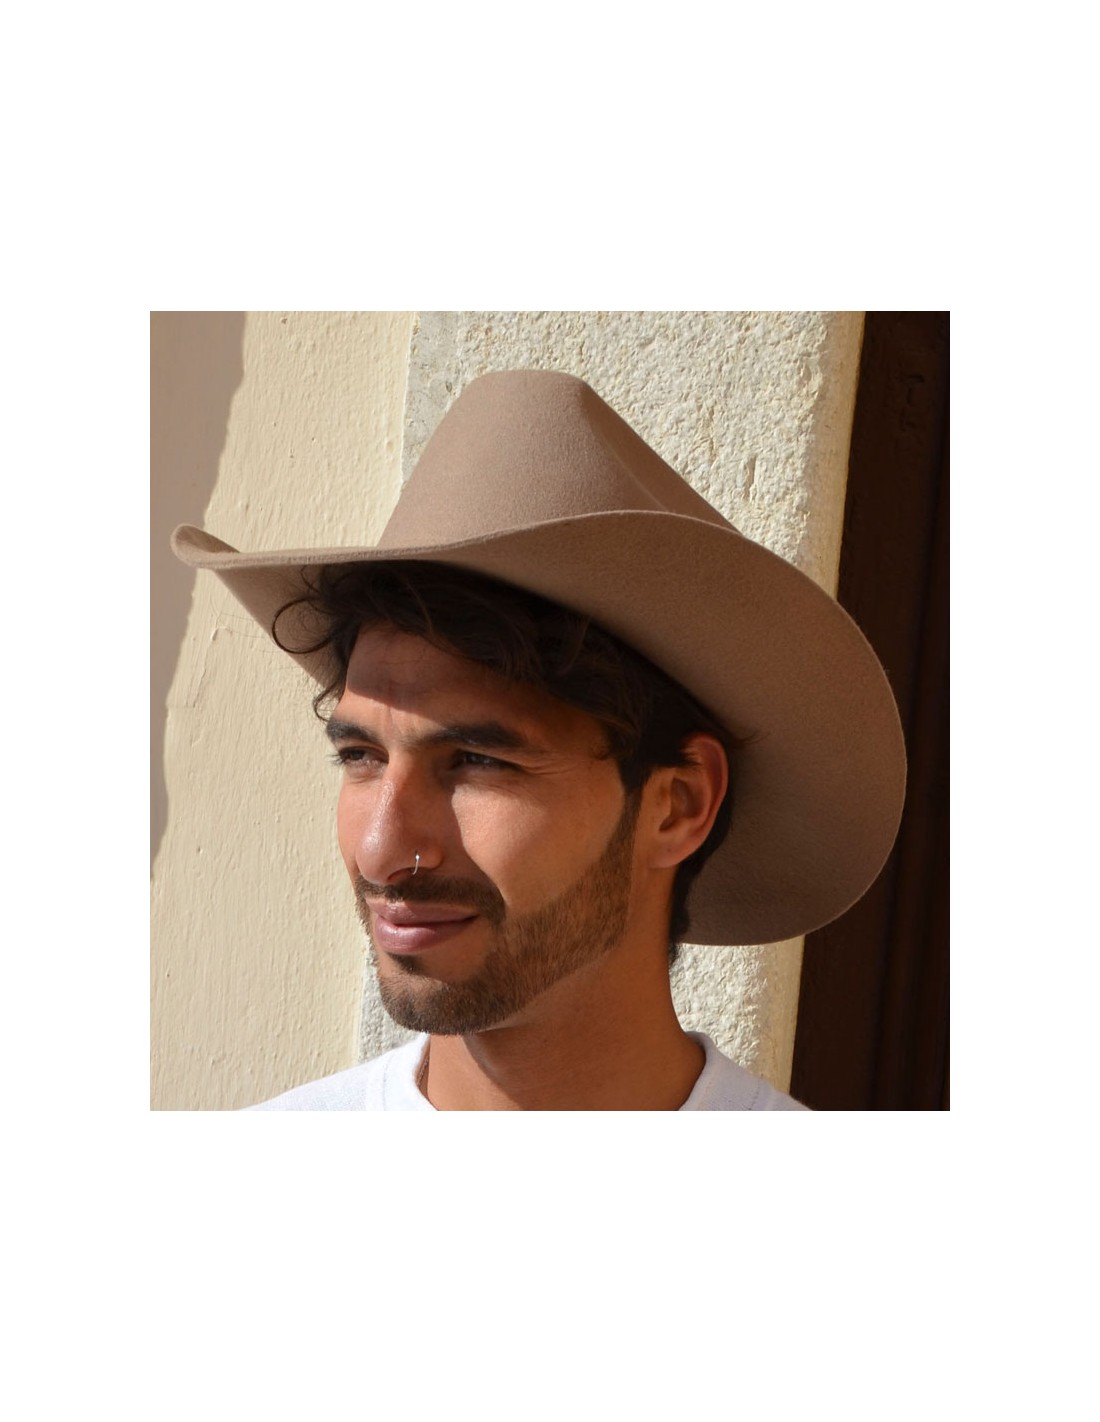  Men's Cowboy Hats - Men's Cowboy Hats / Men's Hats